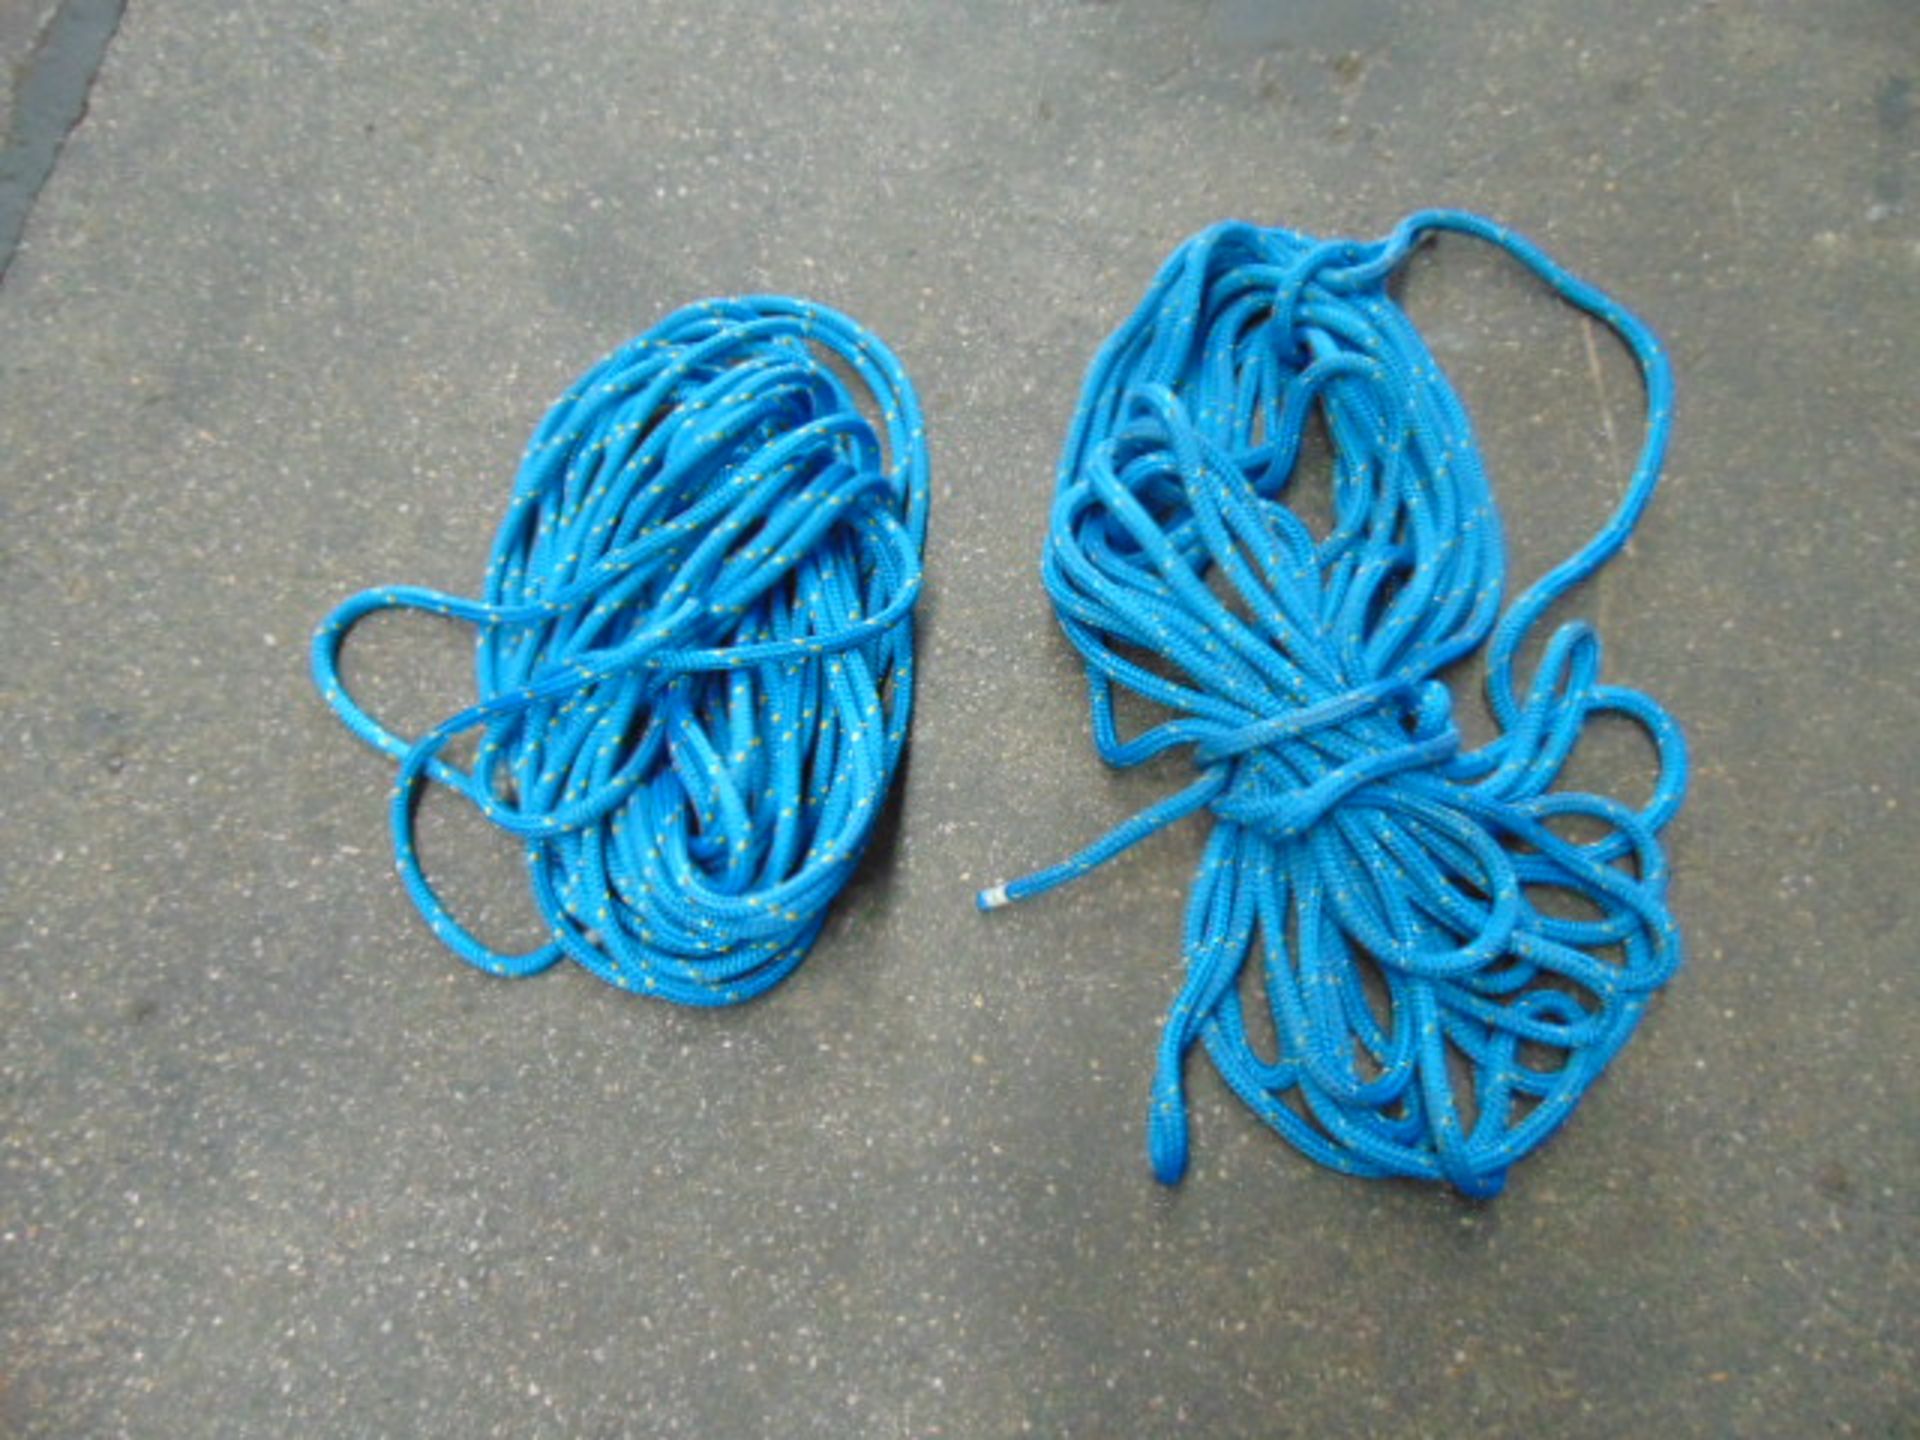 Qty 2 x Climbing Ropes